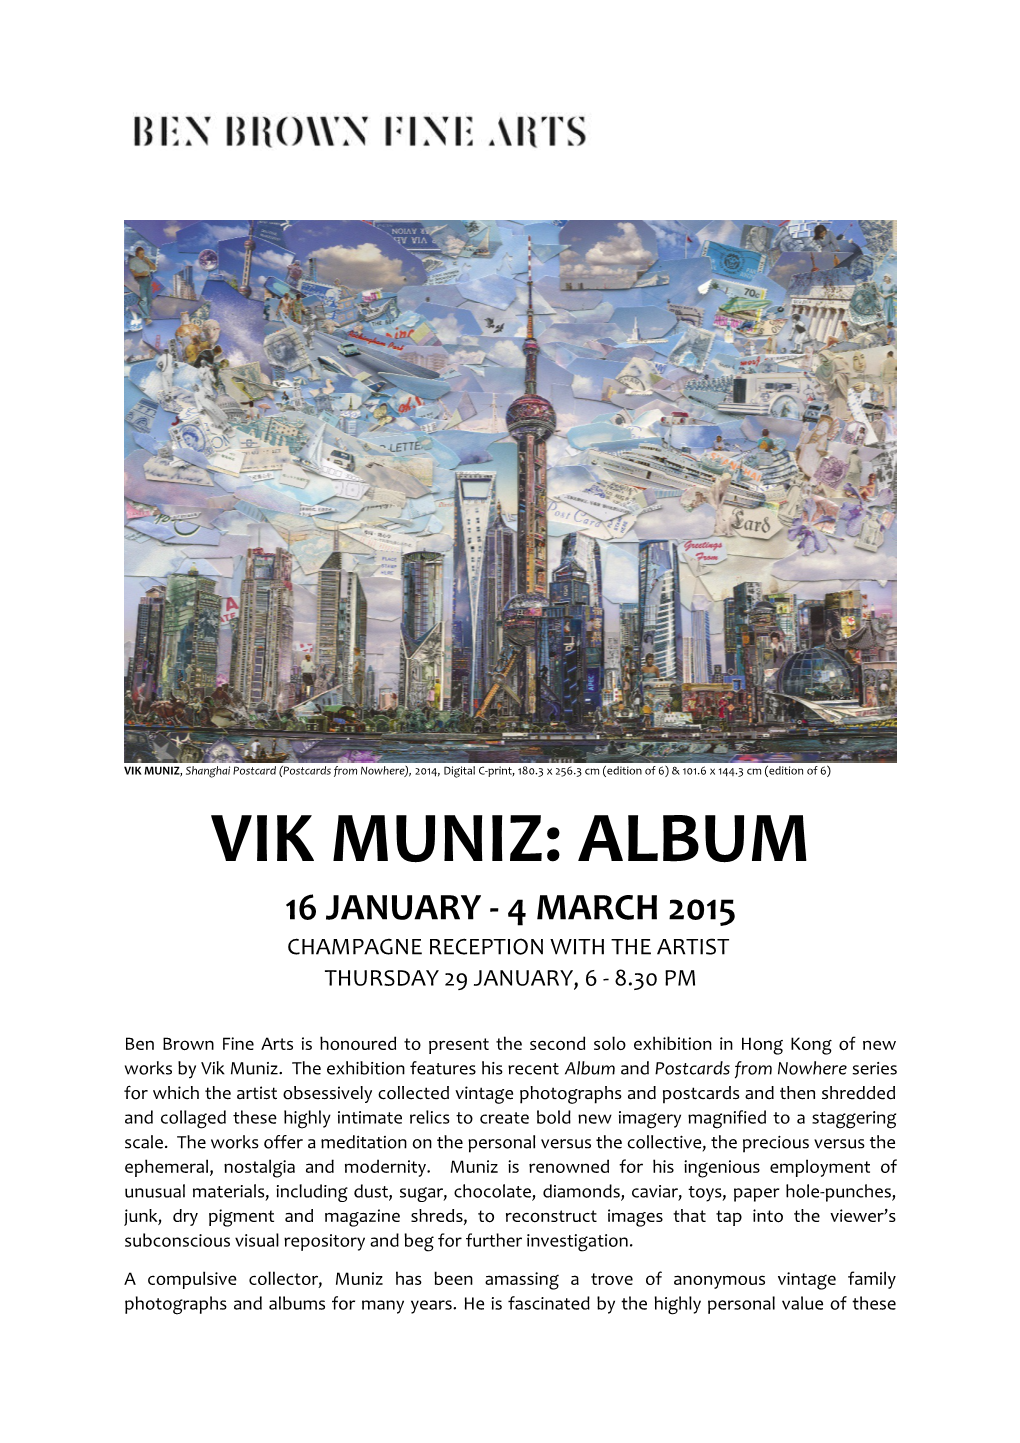 VIK MUNIZ, Shanghai Postcard (Postcards from Nowhere), 2014, Digital C-Print, 180.3 X 256.3